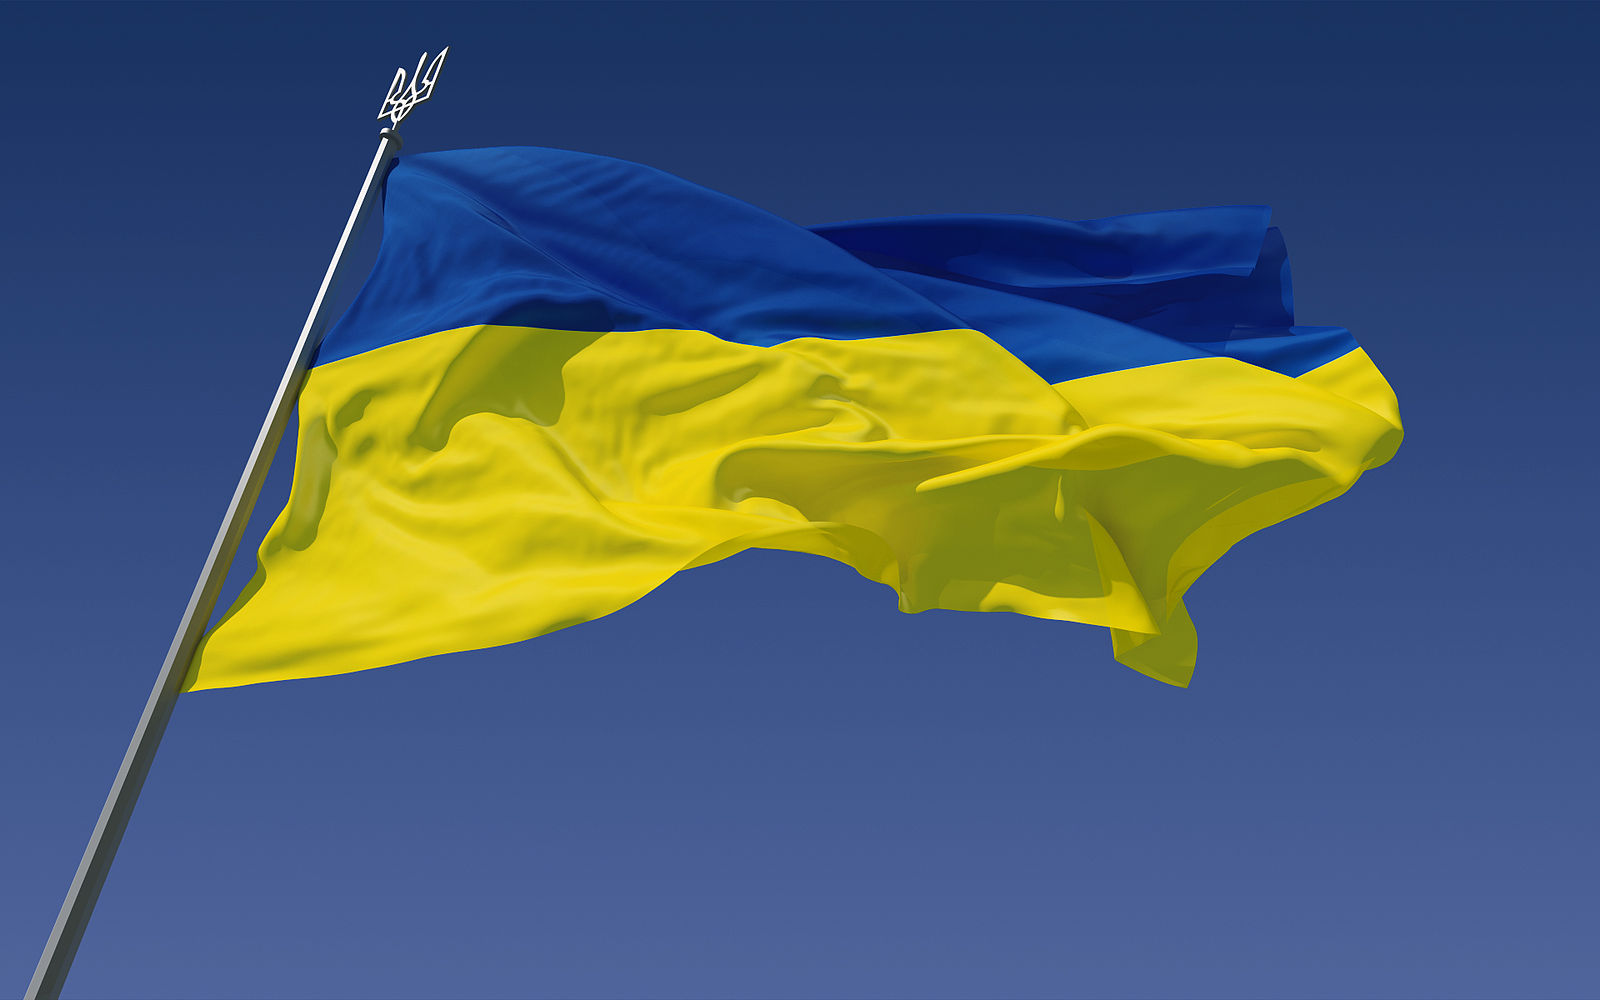 加密通信、离线地图及Twitter等应用下载量在乌克兰大幅增长